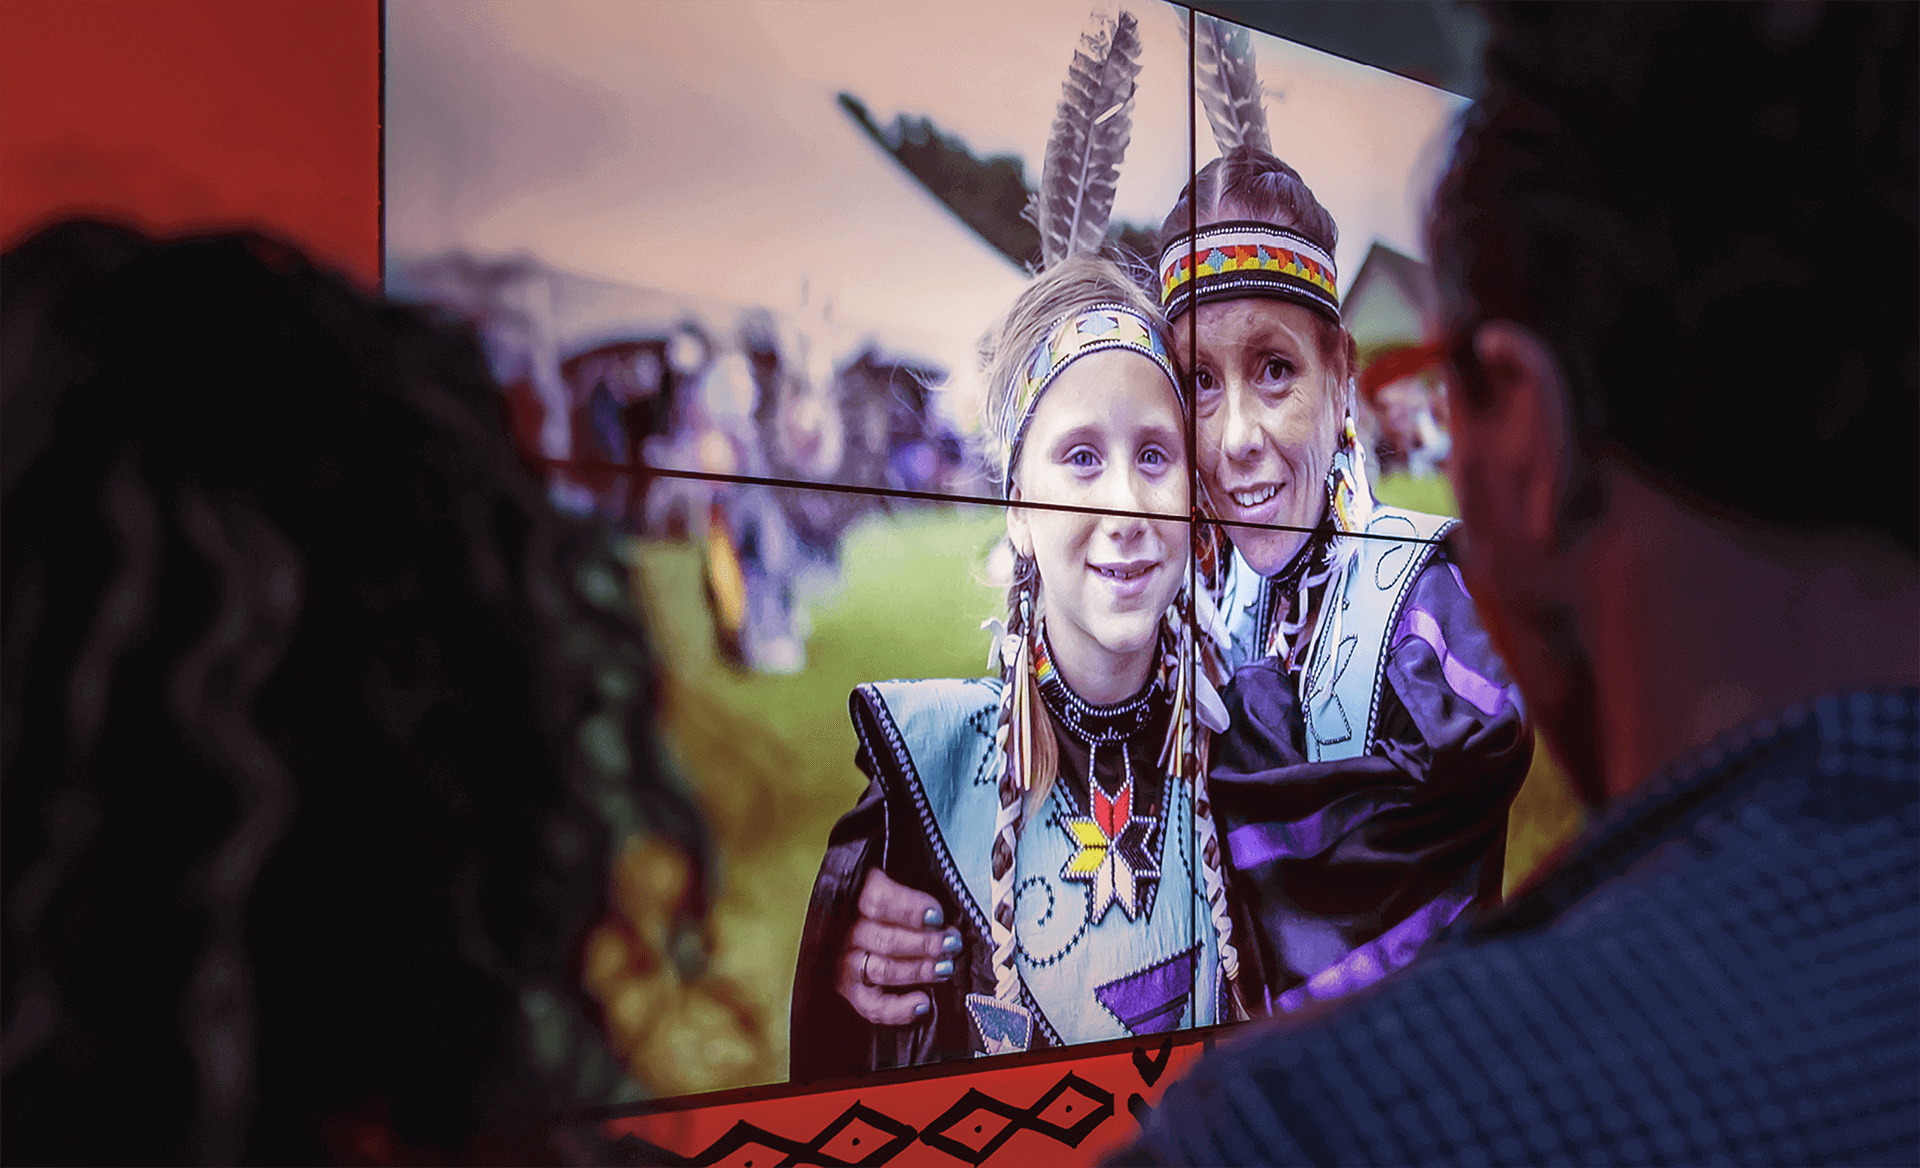 Identité visuelle | Participants en habits traditionnels autochtones sur un écran géant | TAQ